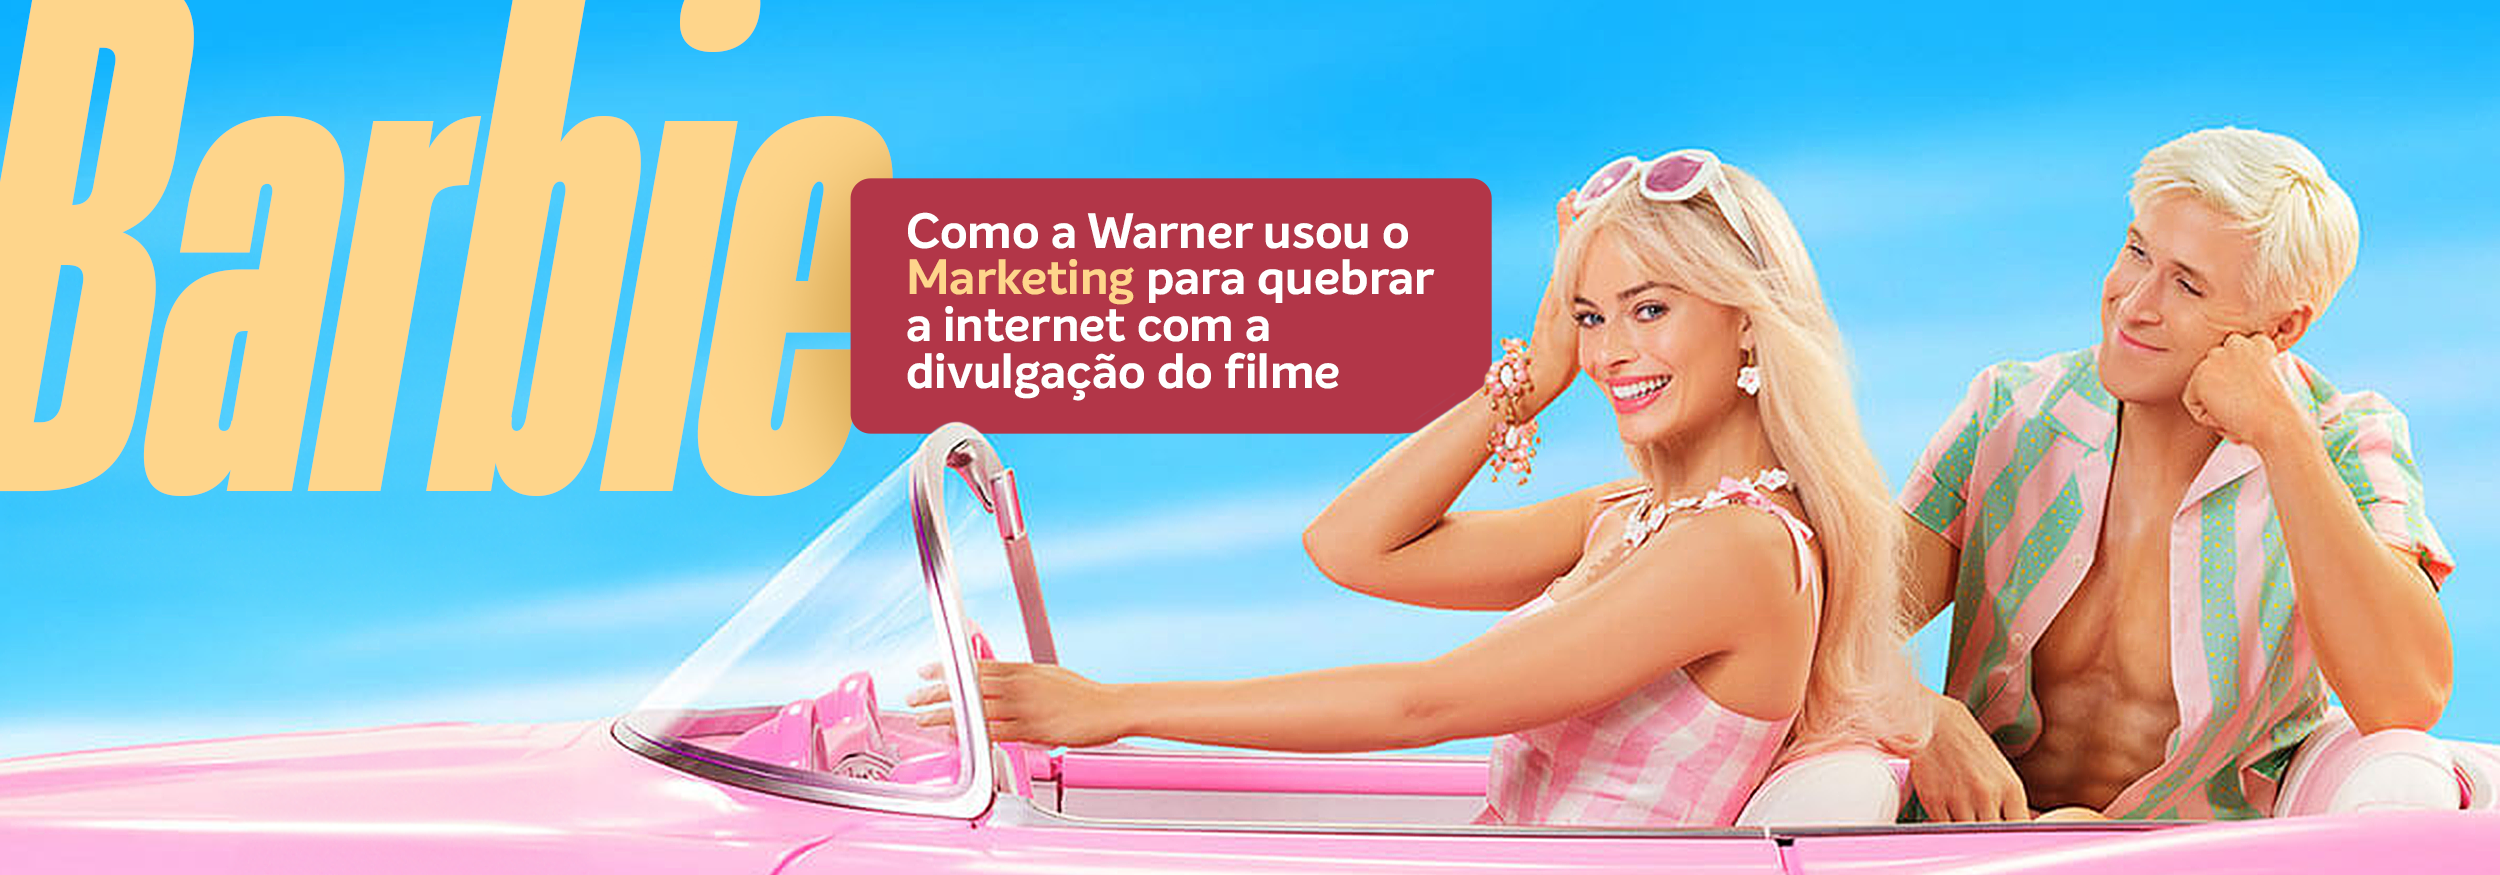 You are currently viewing Barbie: Como a Warner usou o Marketing para quebrar a internet com a divulgação do filme